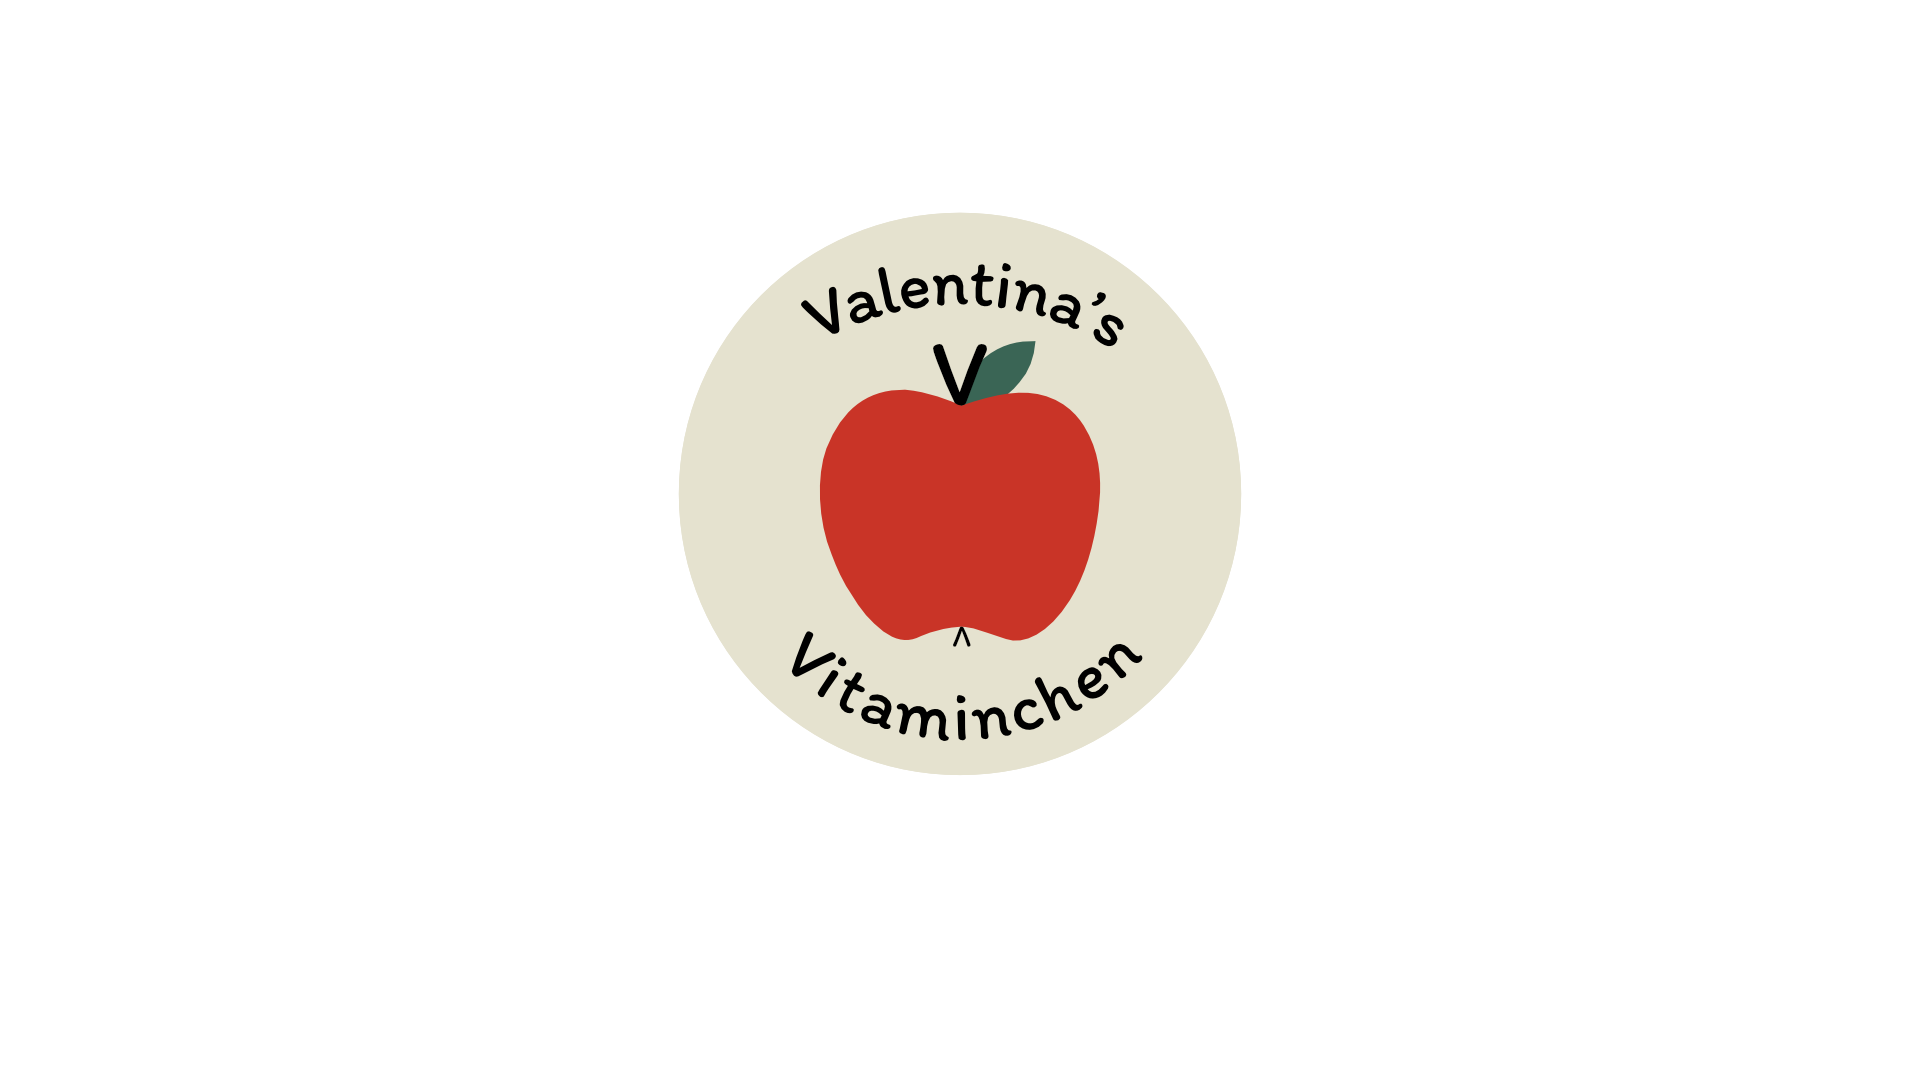 Valentinas Vitaminchen Eberswalde